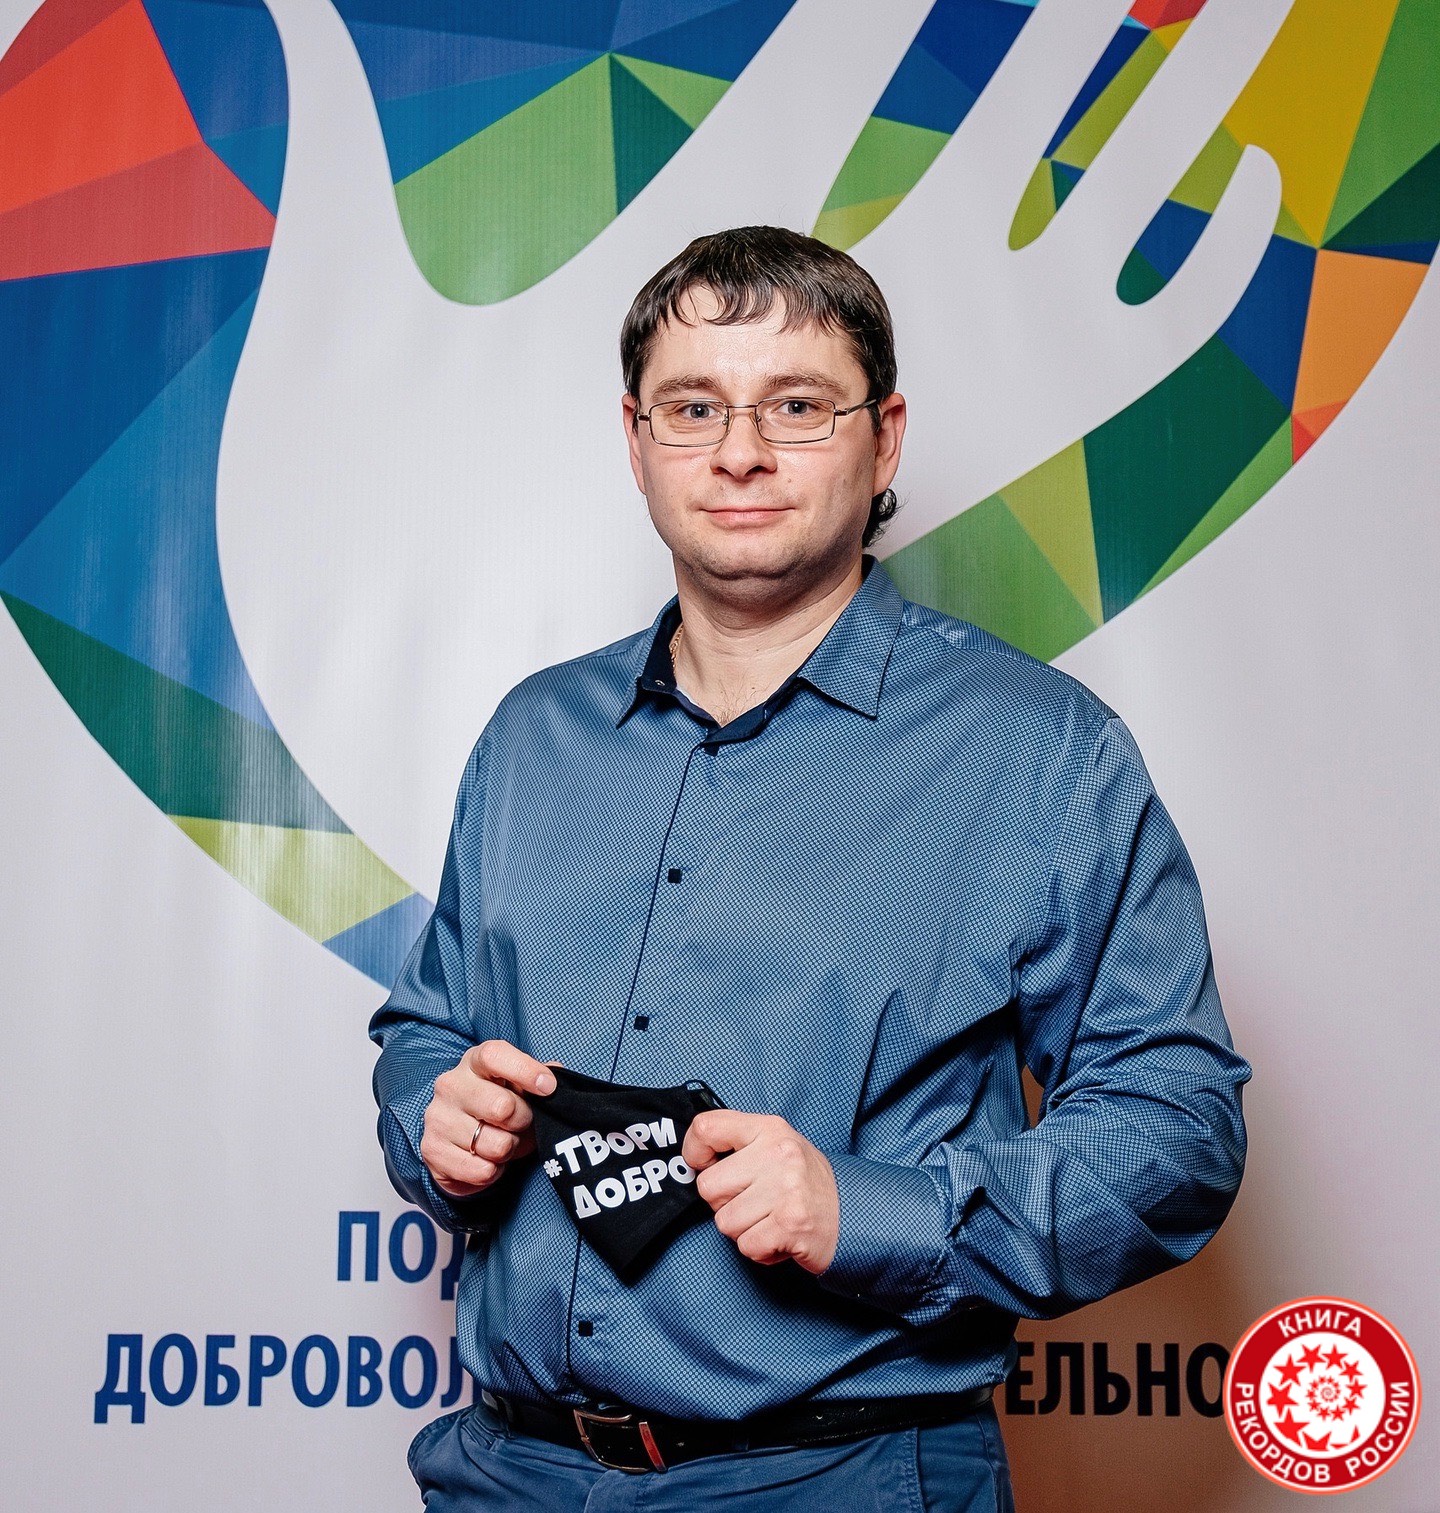 Наибольшее количество добрых дел (мероприятий) волонтера (dobro.ru) в России